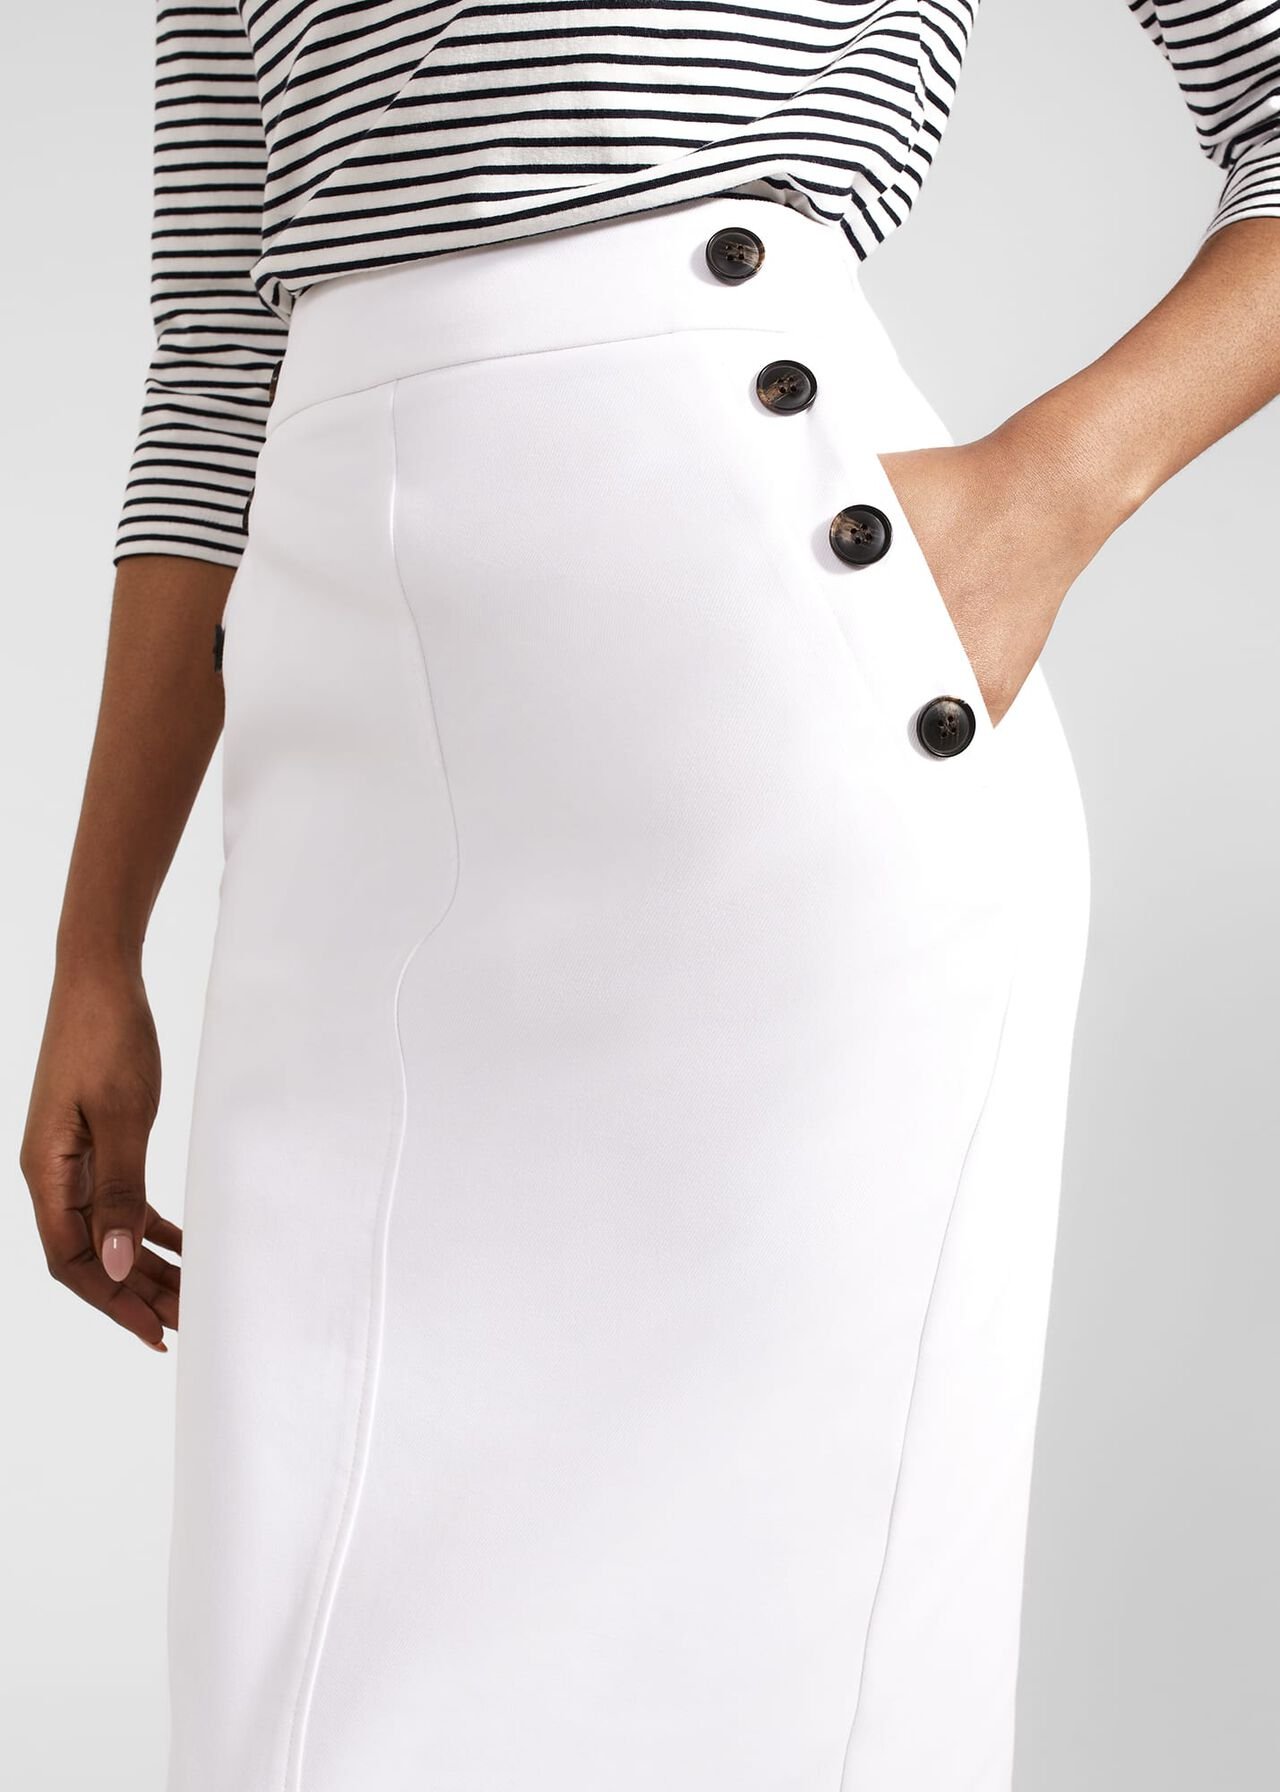 Anita Skirt With Cotton, White, hi-res